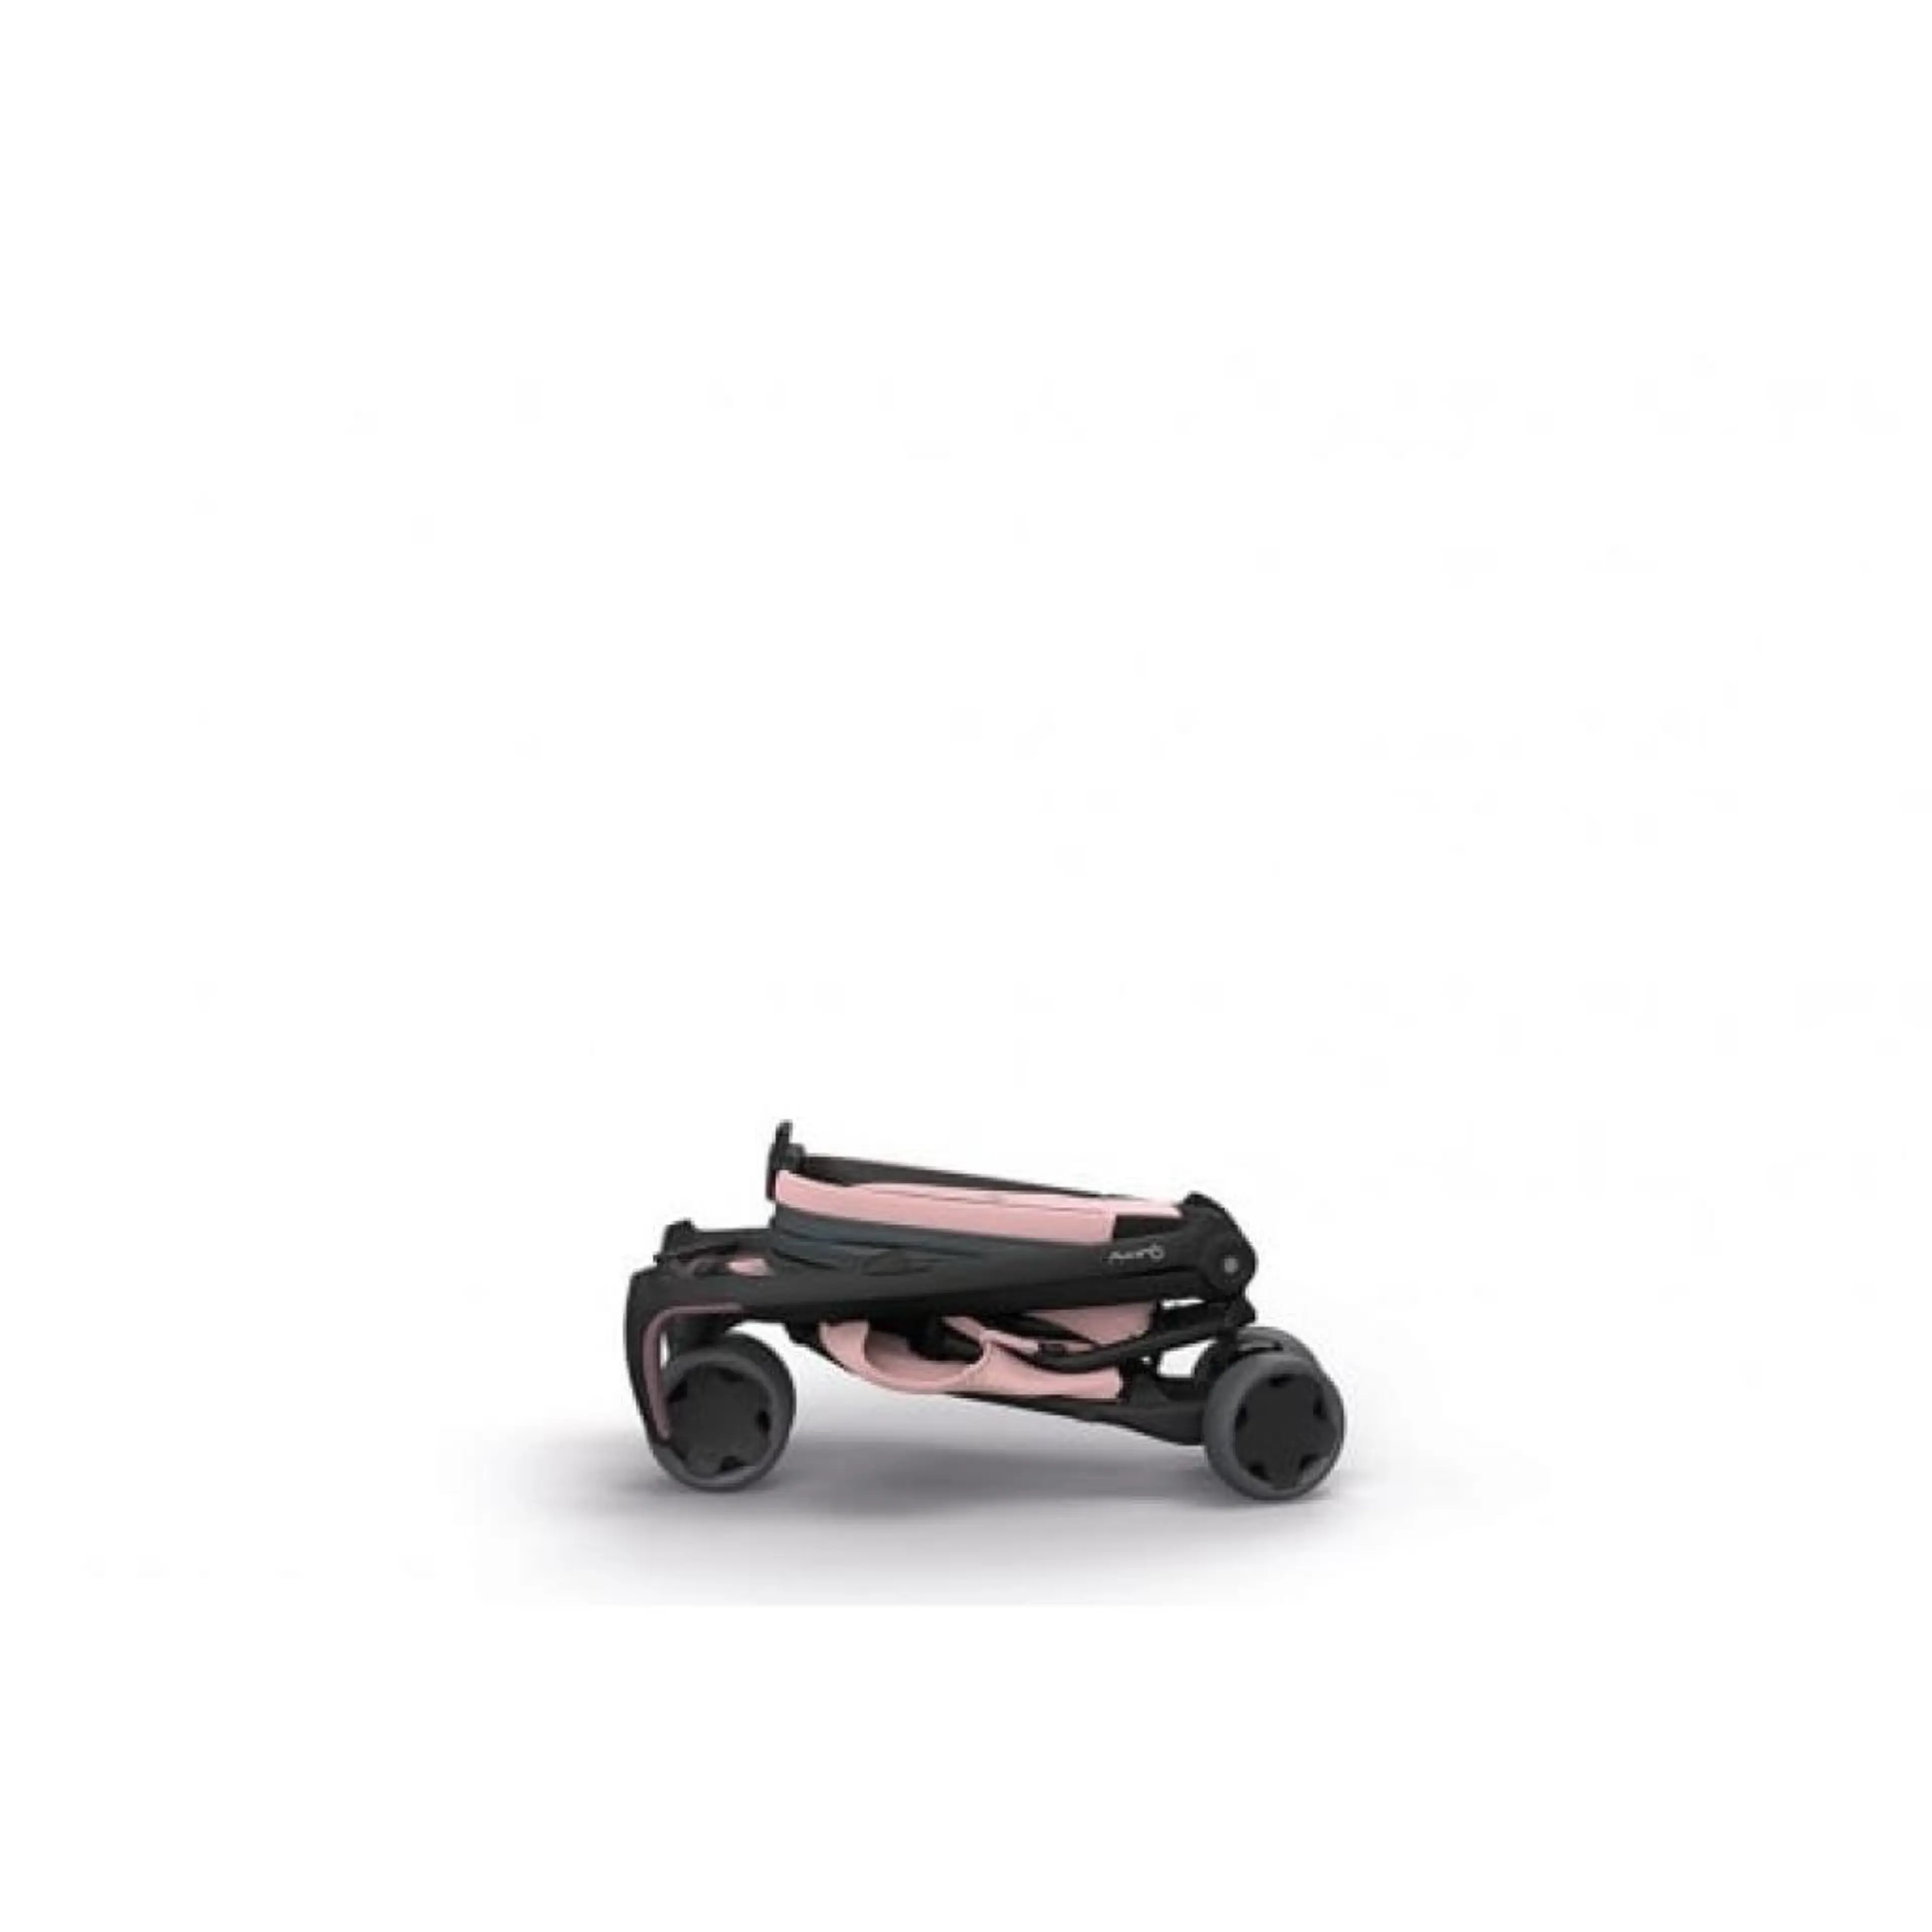 Комбинирана детска количка, Zapp Flex Graphite on blush